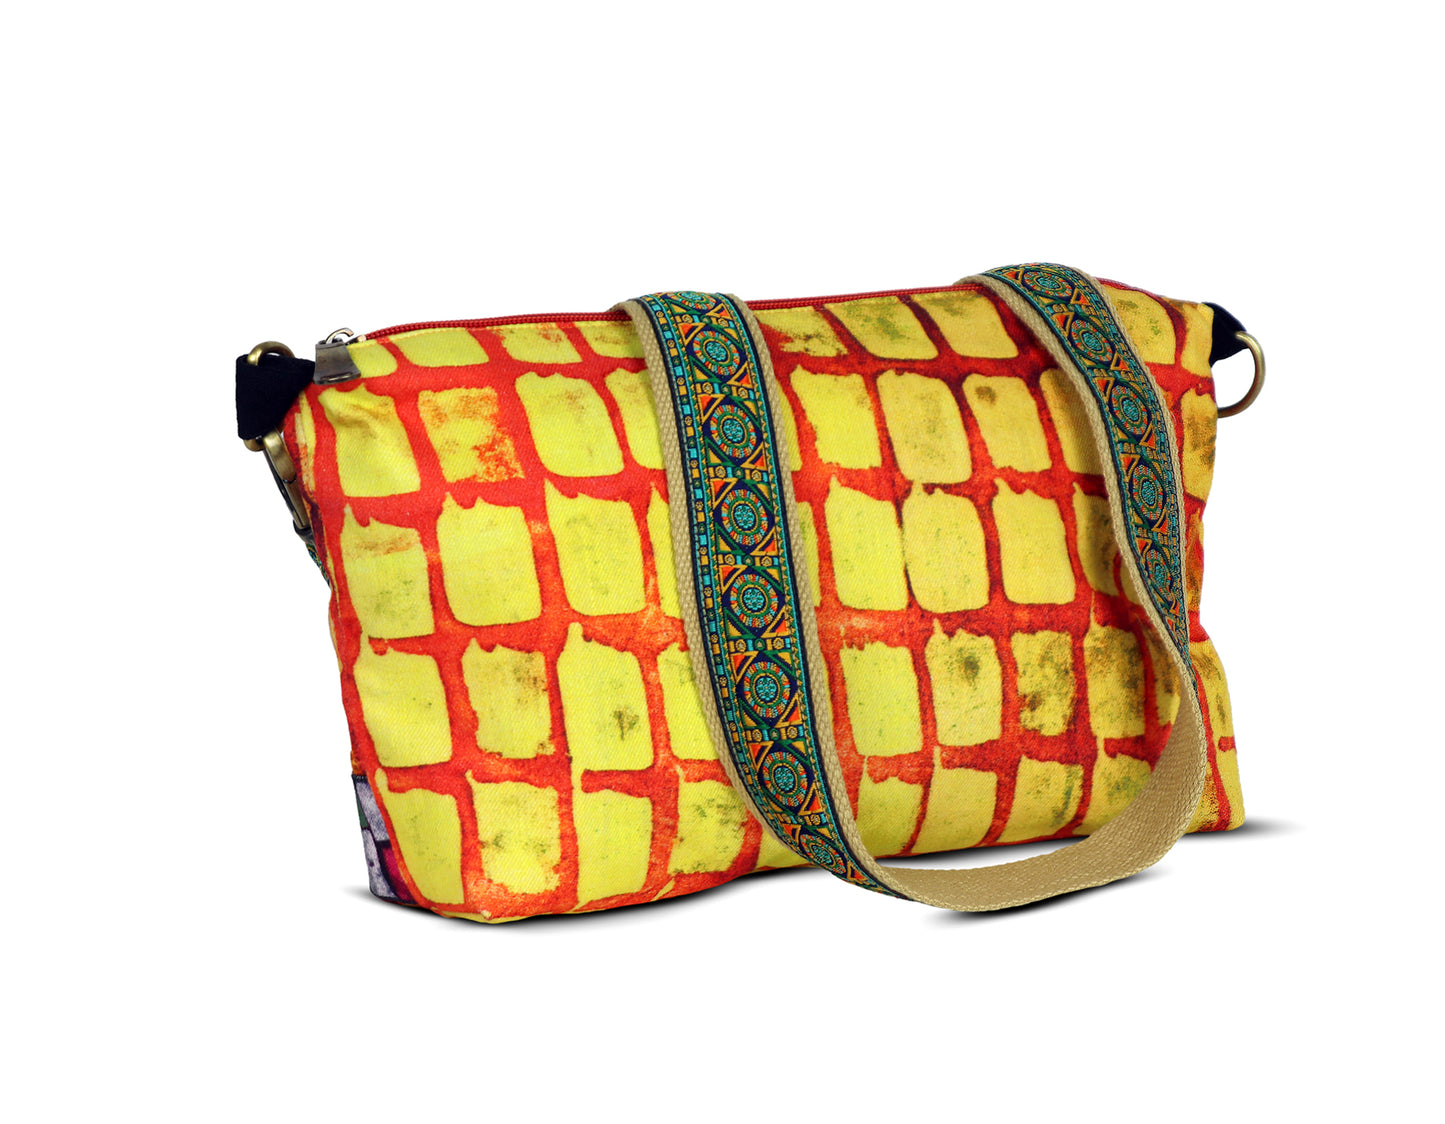 Colourfull sling bag